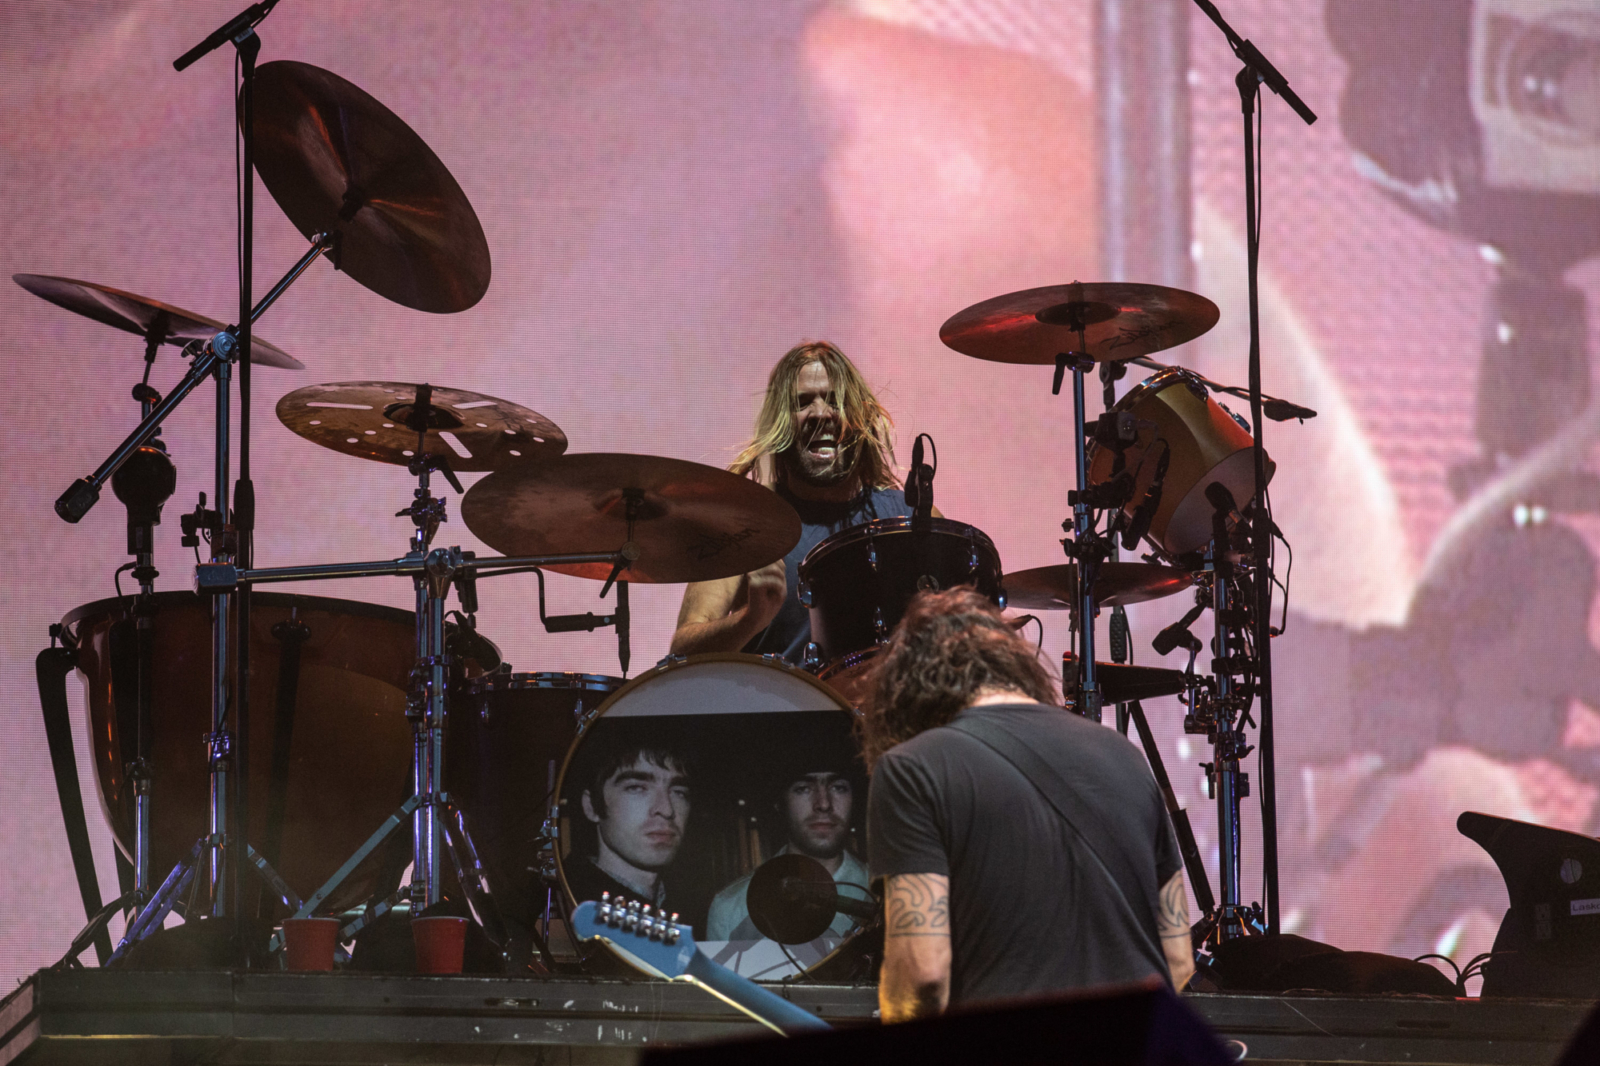 Taylor Hawkins, Foo Fighters drummer, dies